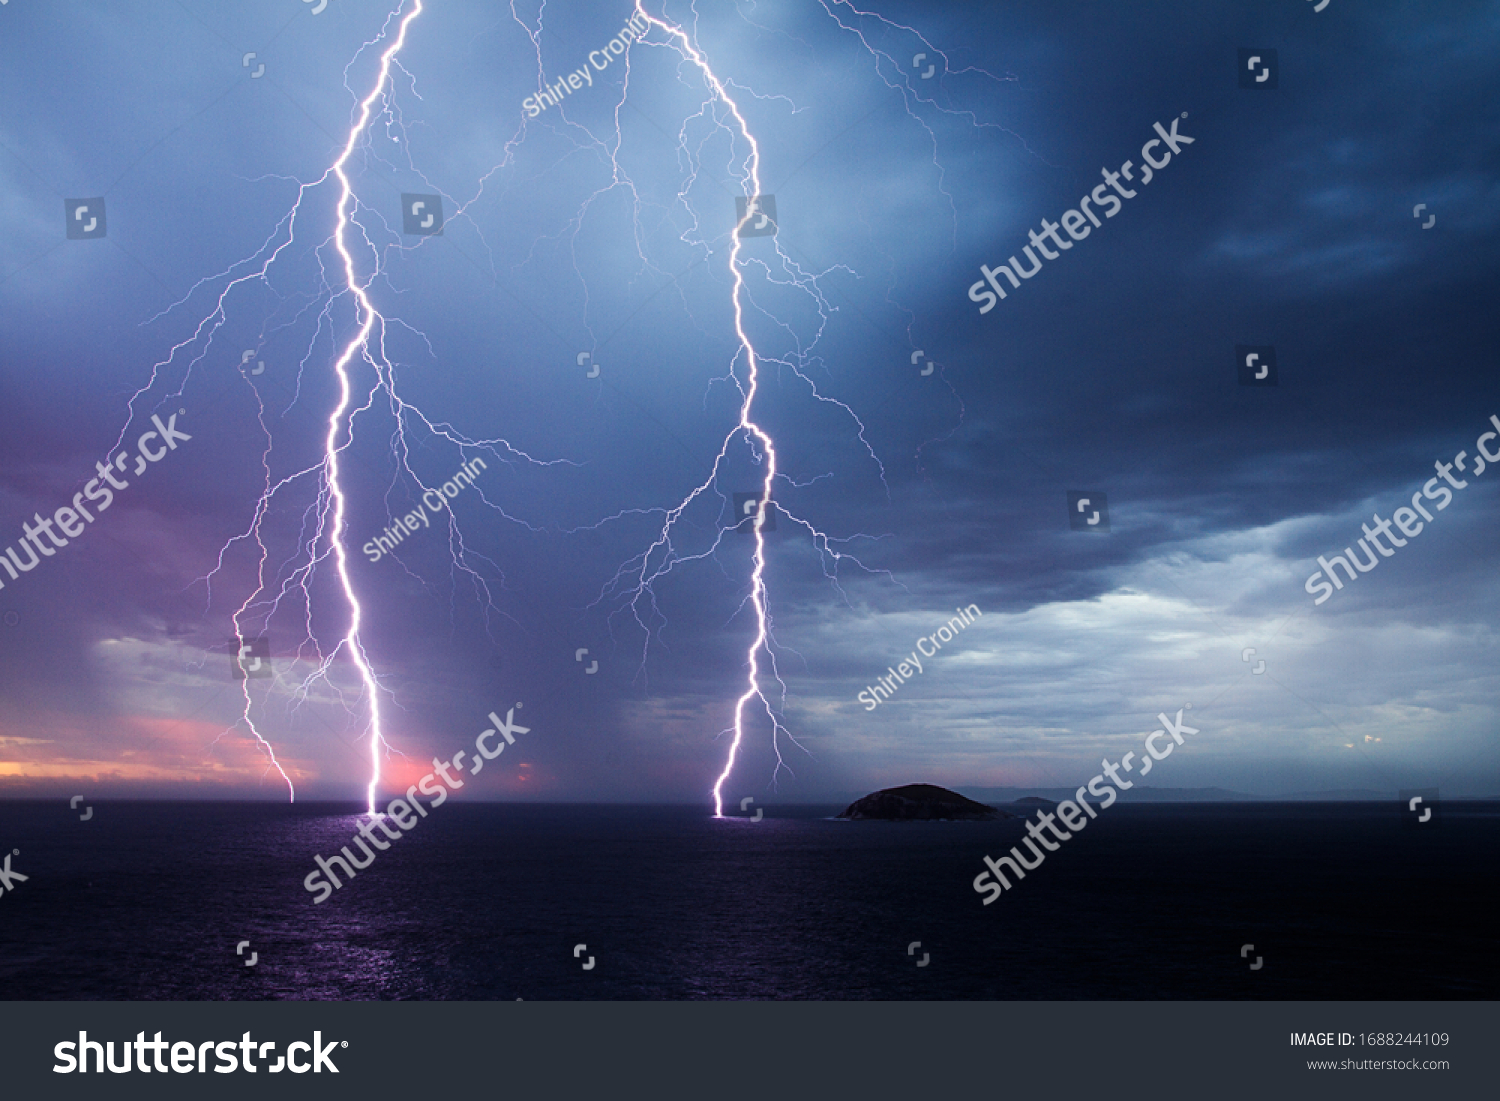 Double lightning strike over the ocean at sunset #1688244109